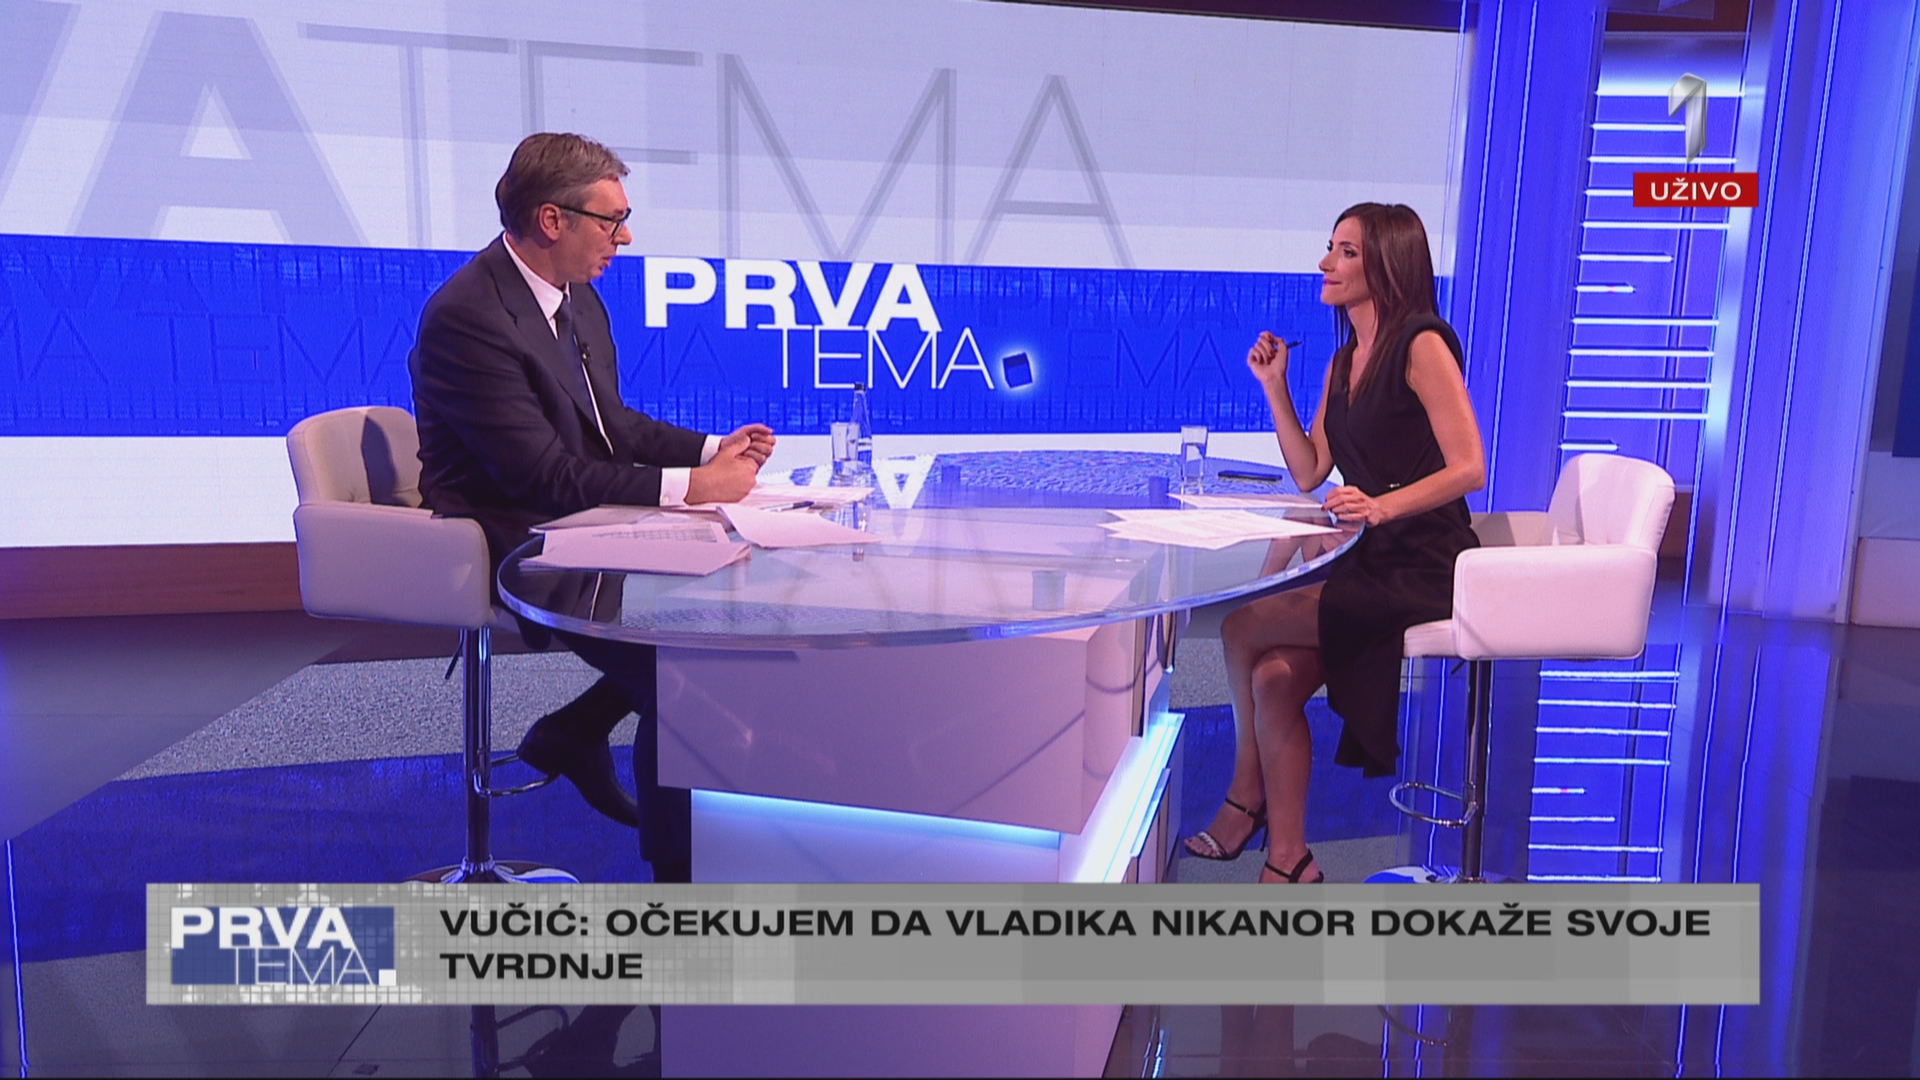 Prva tema - Gost: Predsednik Srbije Aleksandar Vučić